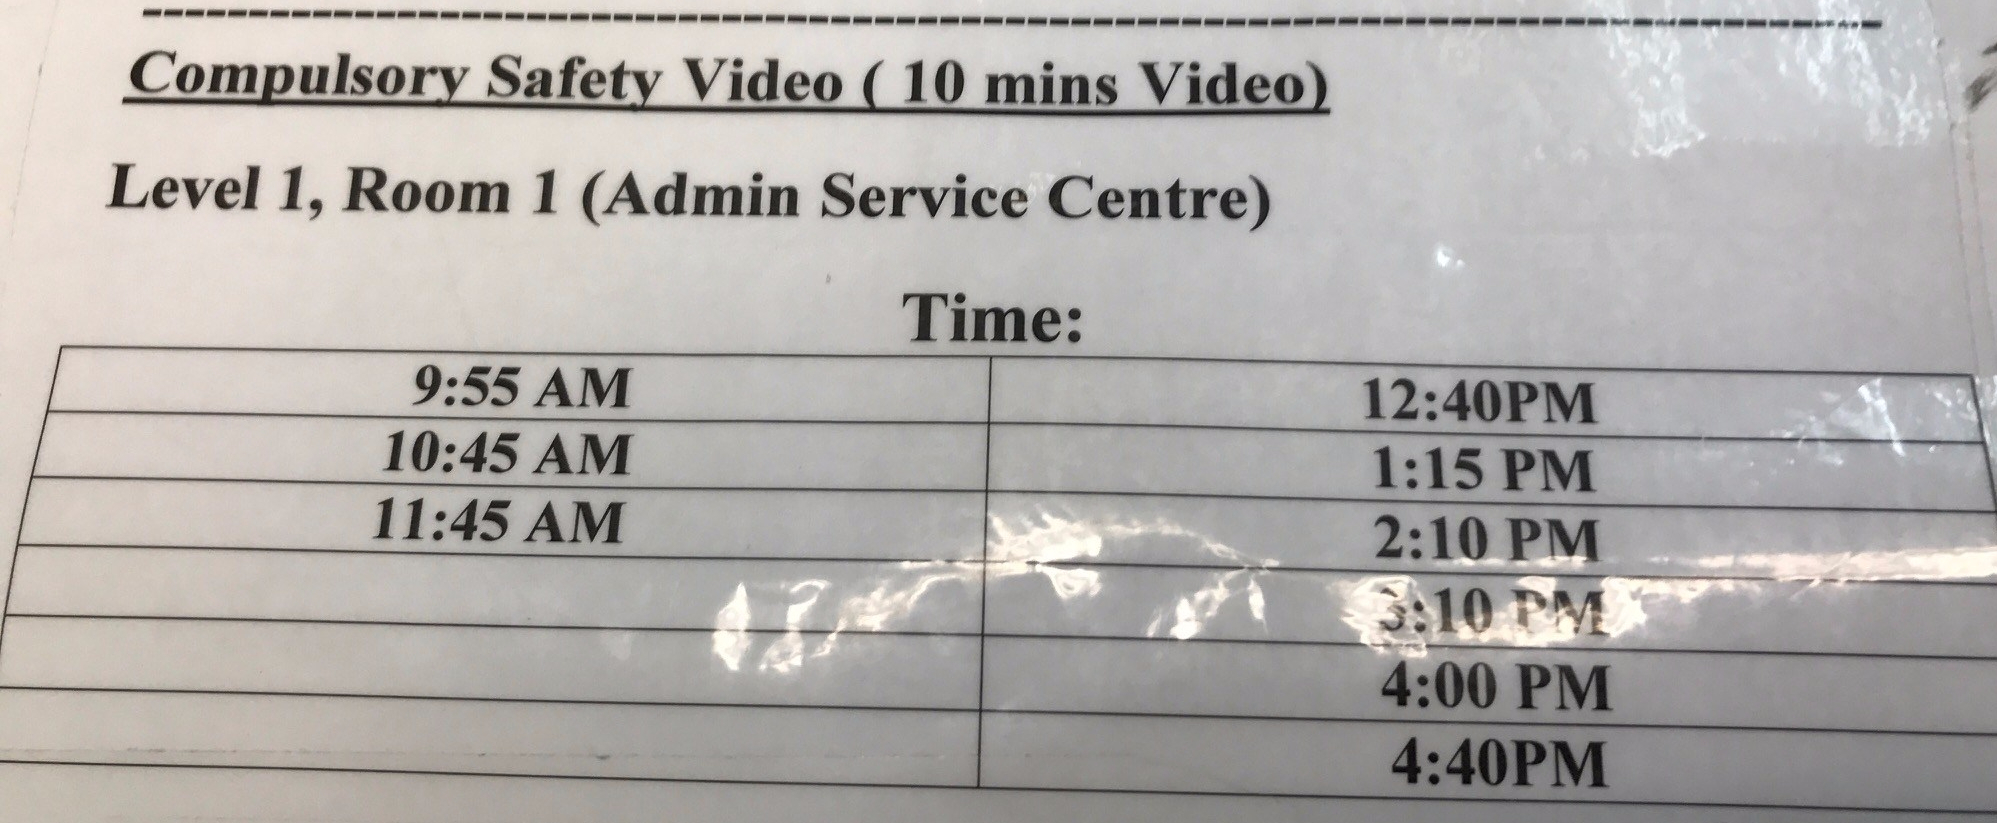 cdc-safety-video-schedule.jpg